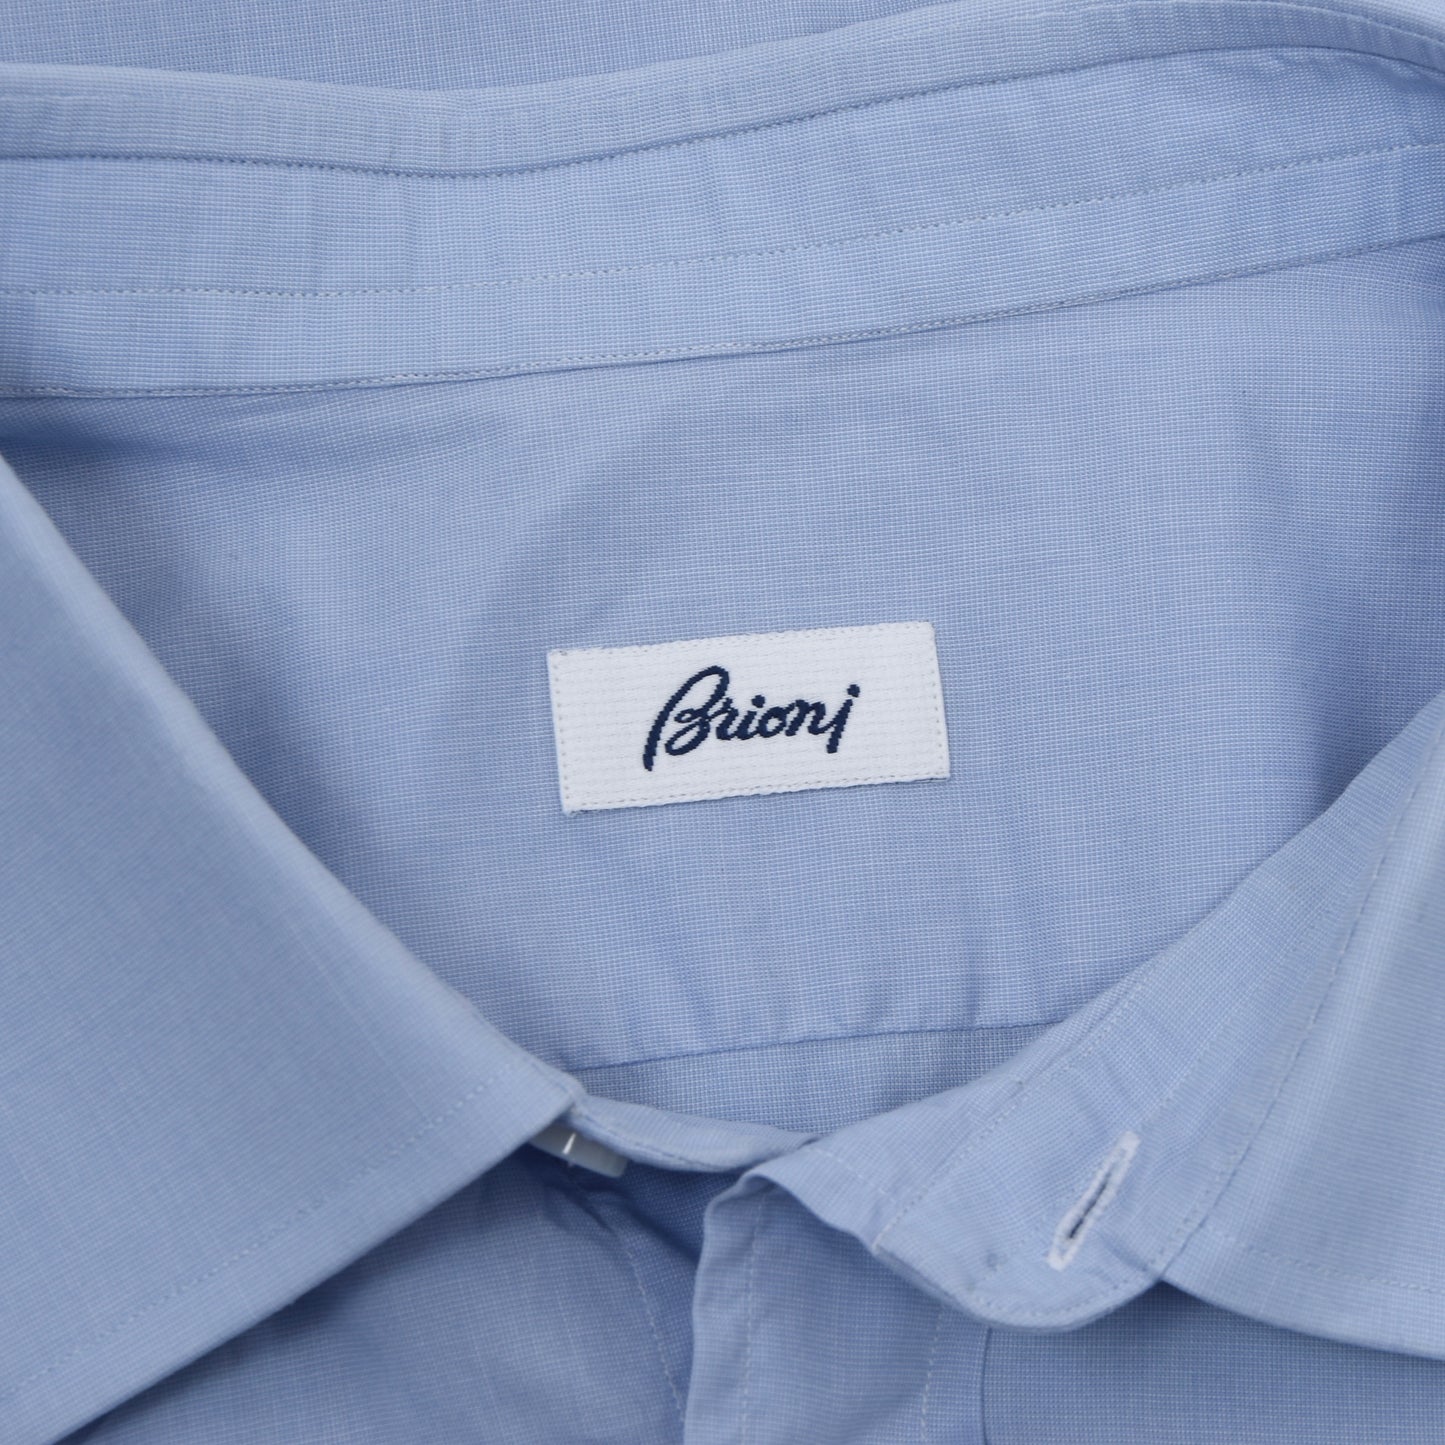 Brioni Cotton Shirt Size Size 45/ 17 3/4 - Blue